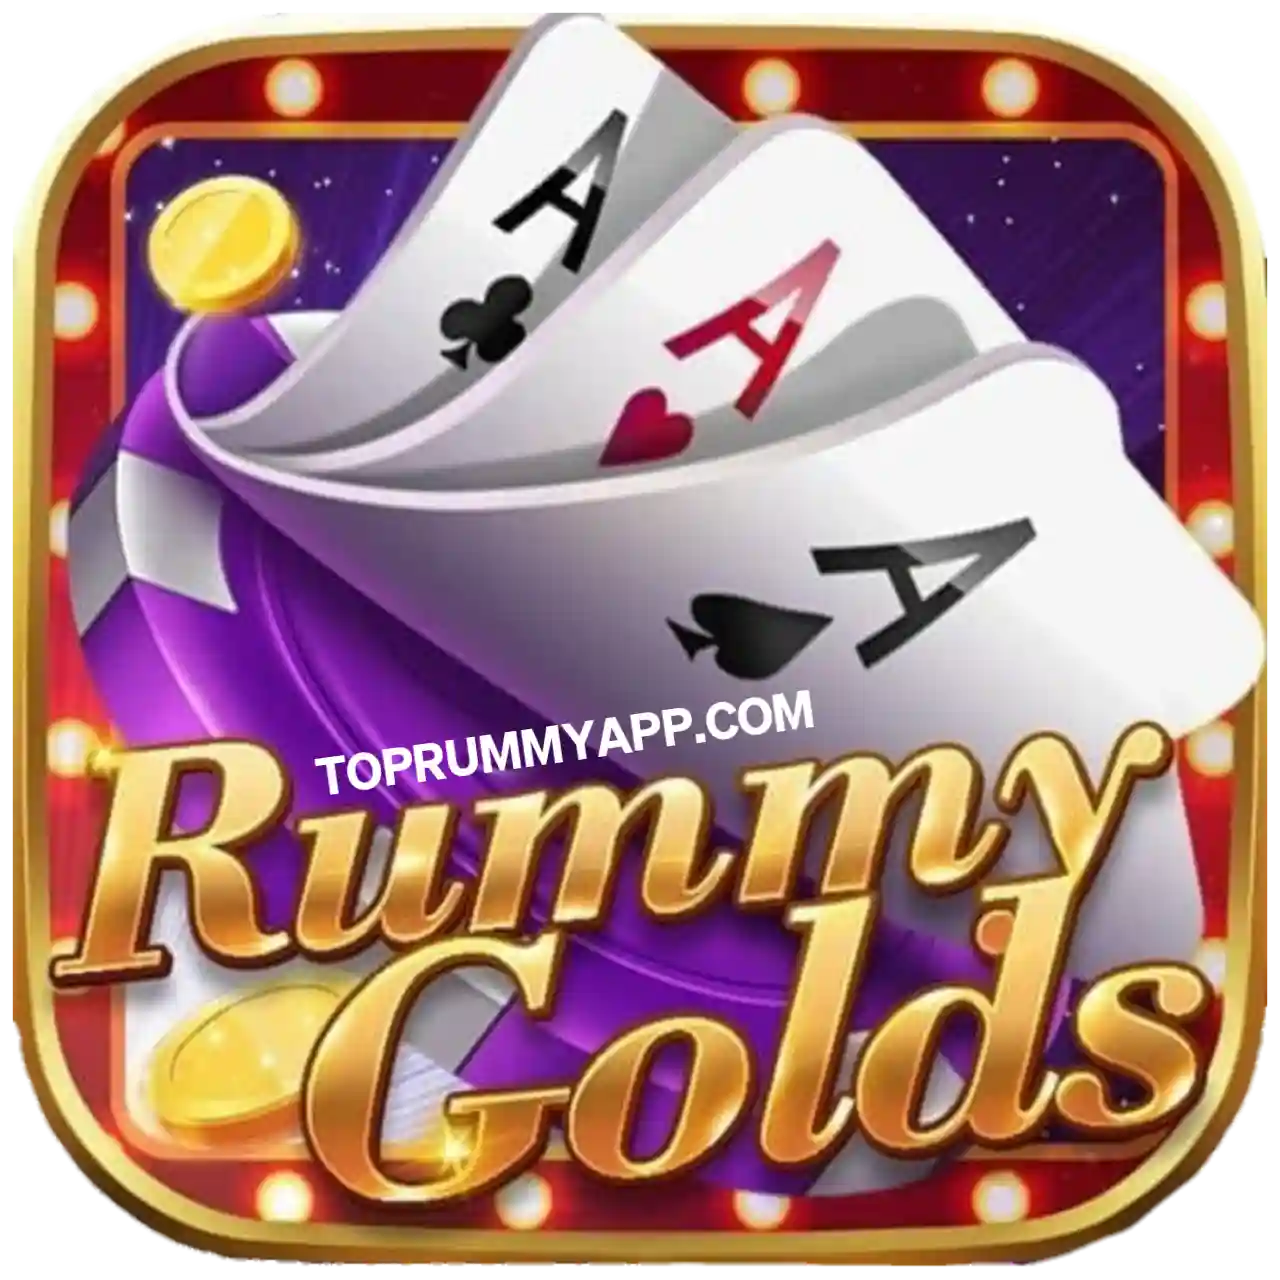 Rummy Golds App Download Top Rummy App List ₹51 Bonus